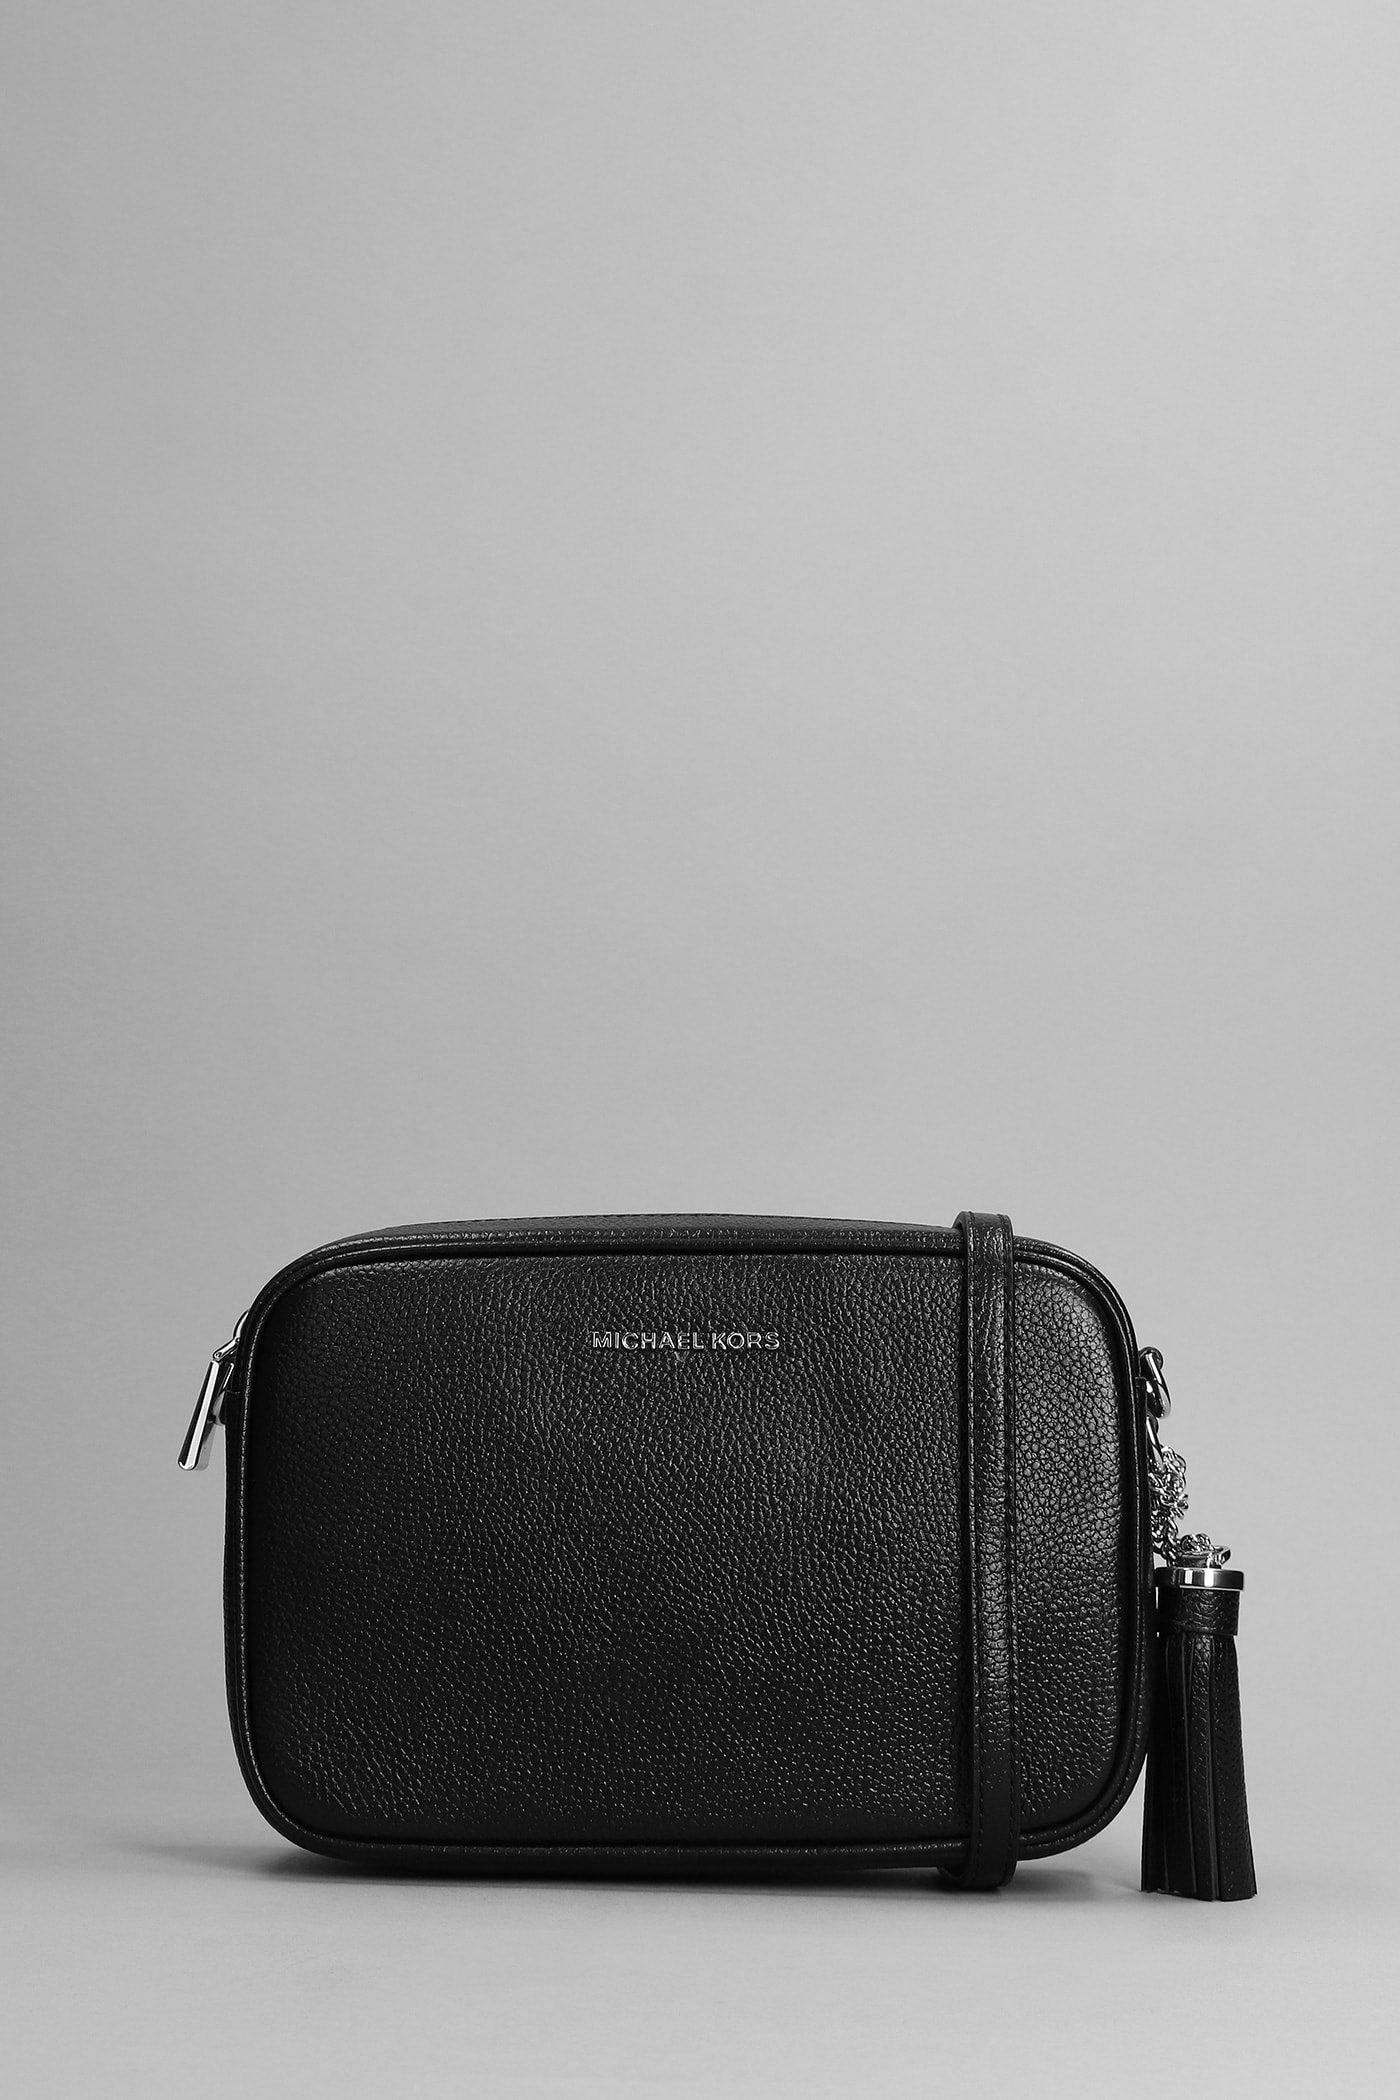 Michael Kors Ginny Shoulder Bag In Black Leather